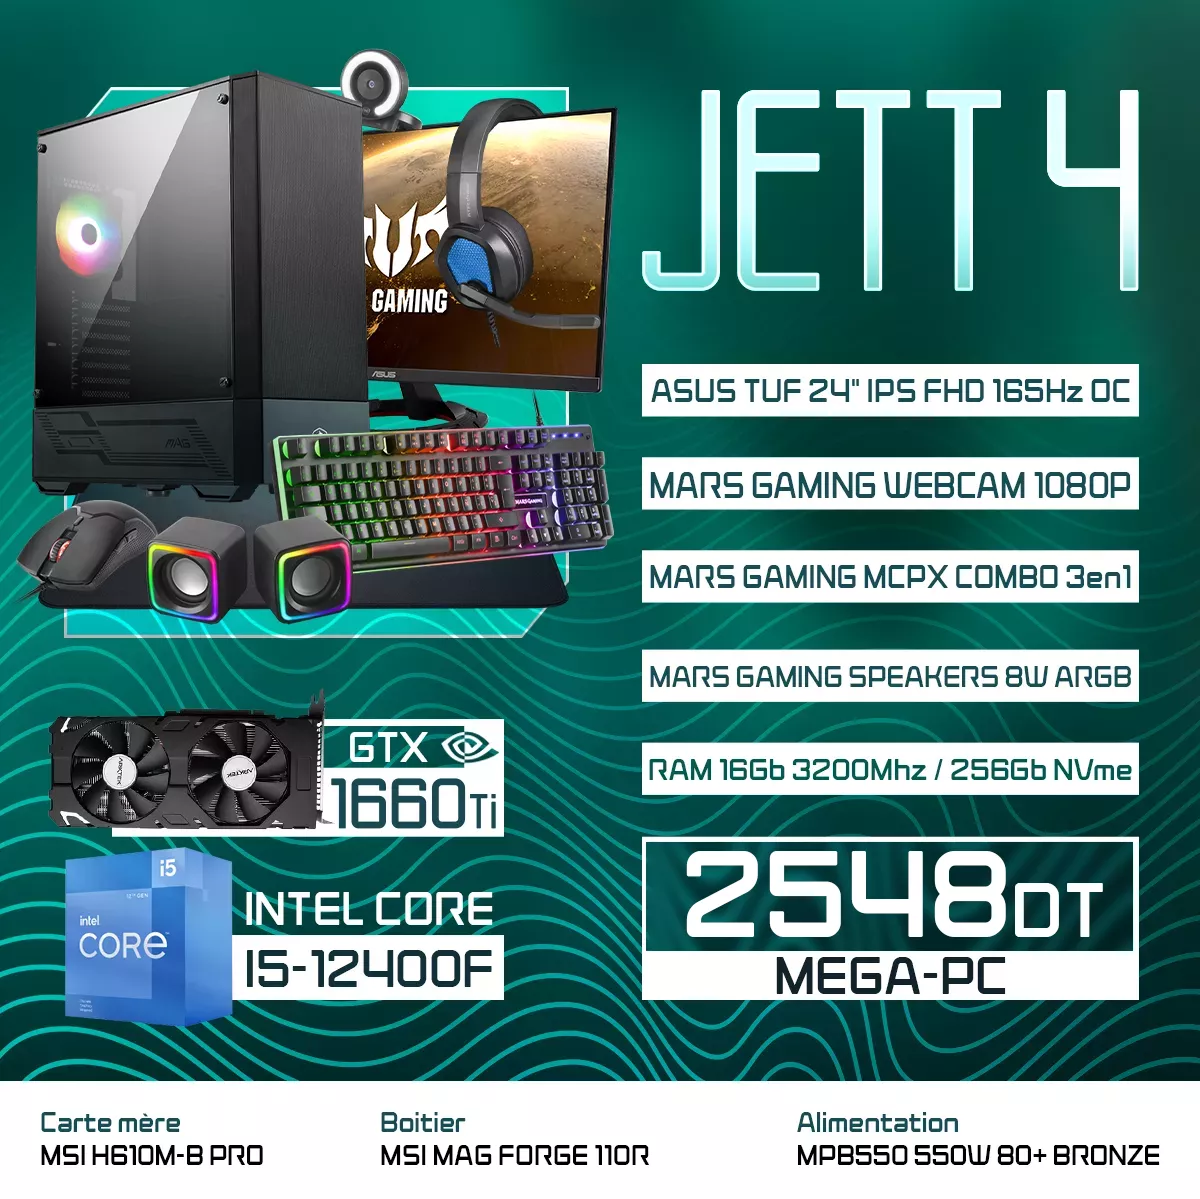 JETT 4 | I5-12400F | GTX 1660 Ti | 16GB RAM | 256GB NVMe |